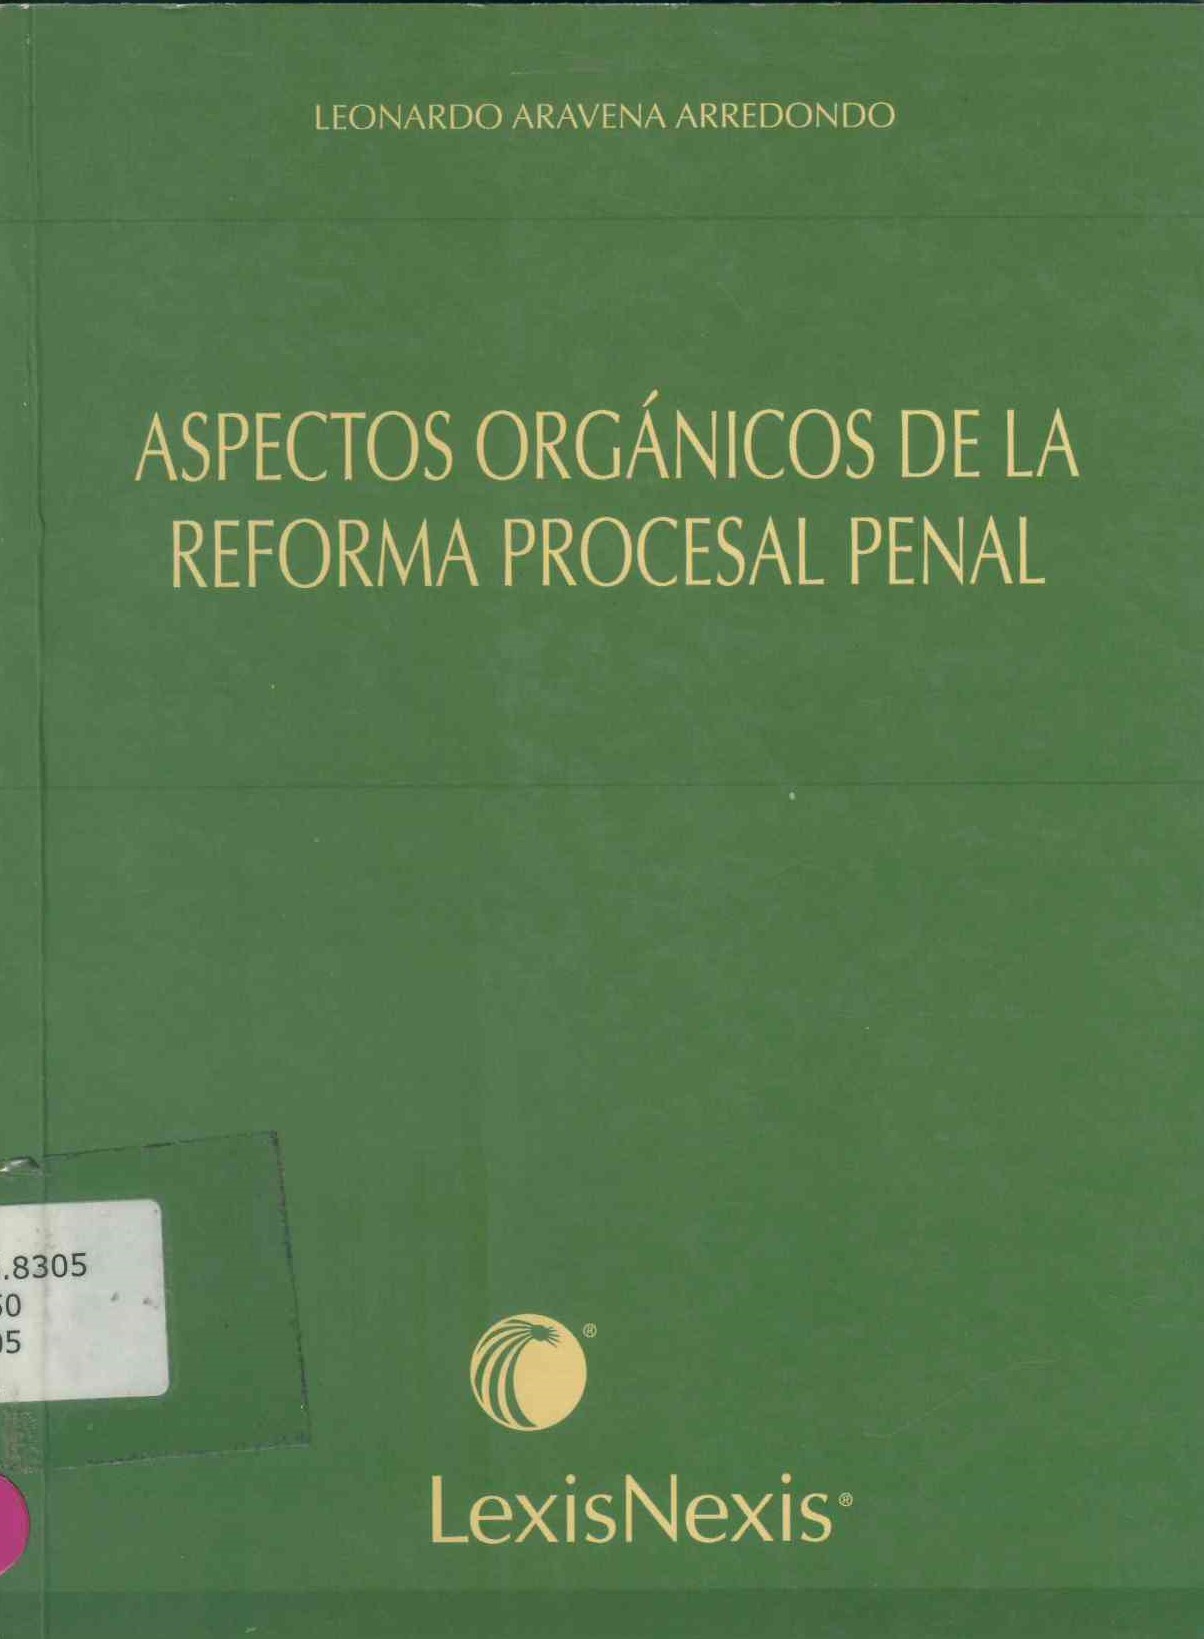 Aspectos orgánicos de la reforma procesal penal